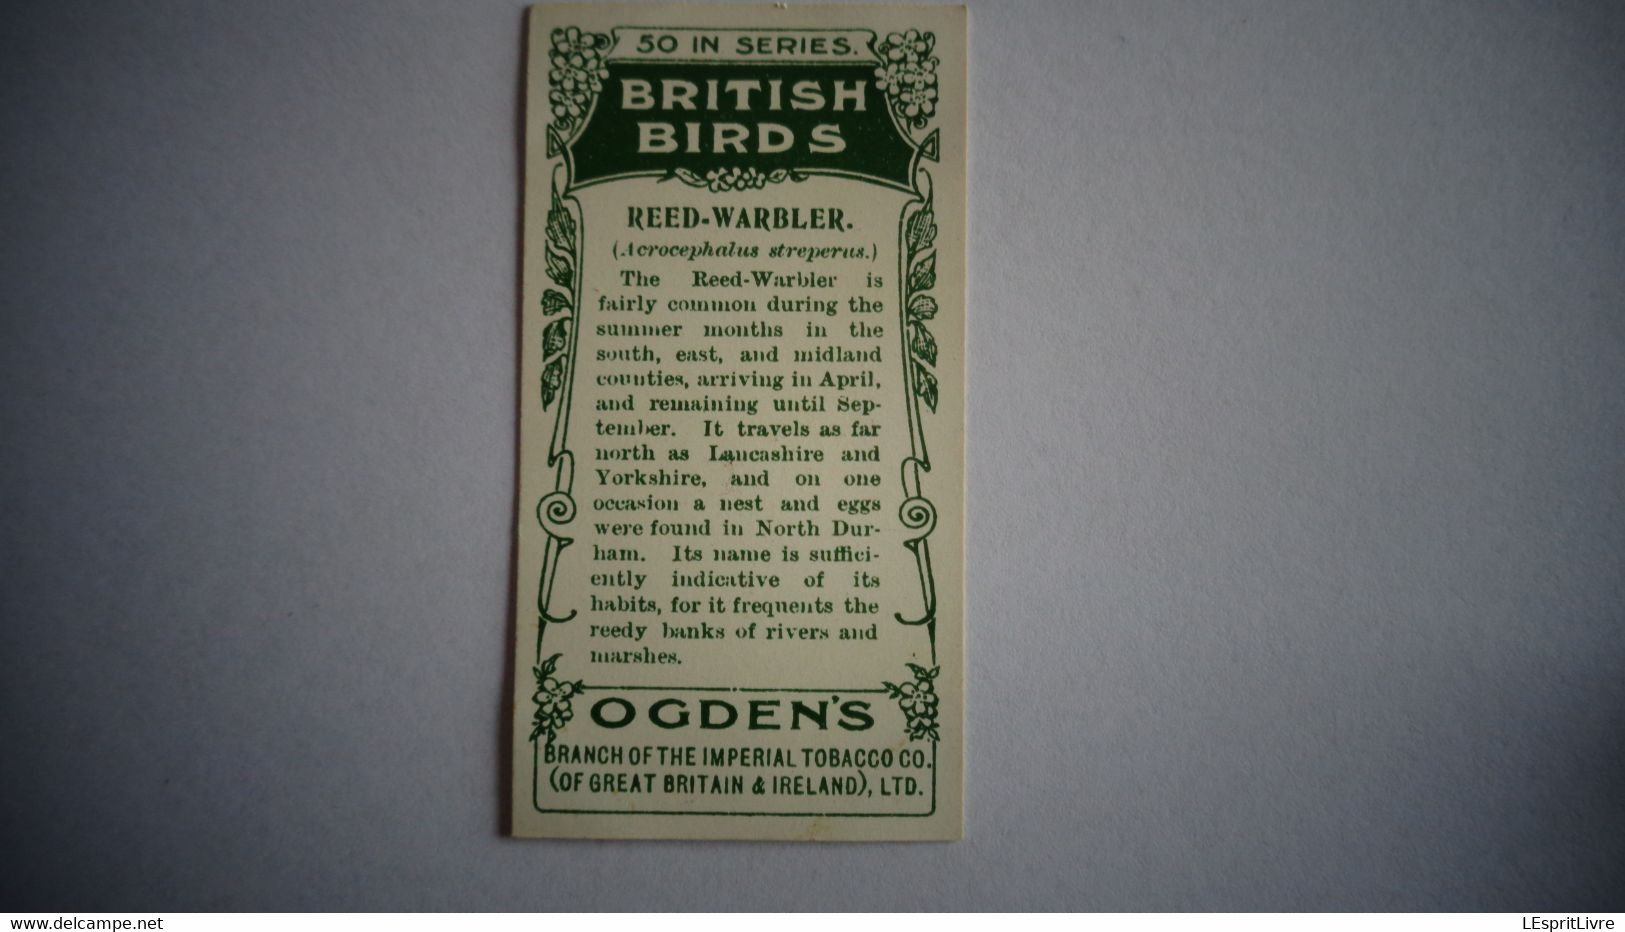 BRITISH BIRDS N° 30 REED WARBLER Oiseau Bird  Cigarettes OGDEN'S Tobacco Vignette Trading Card Chromo - Ogden's